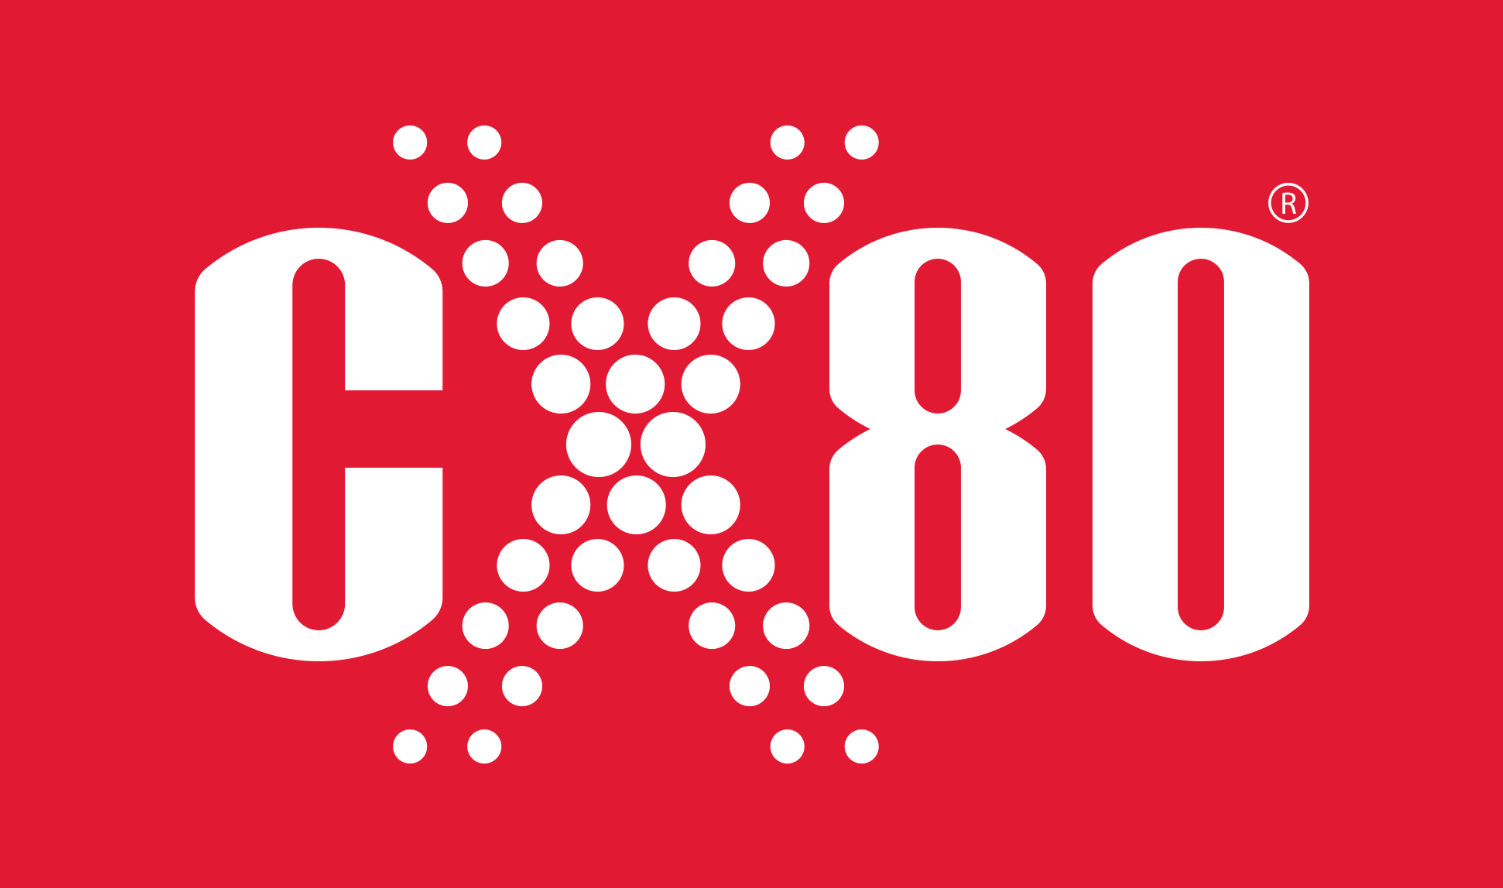 CX-80